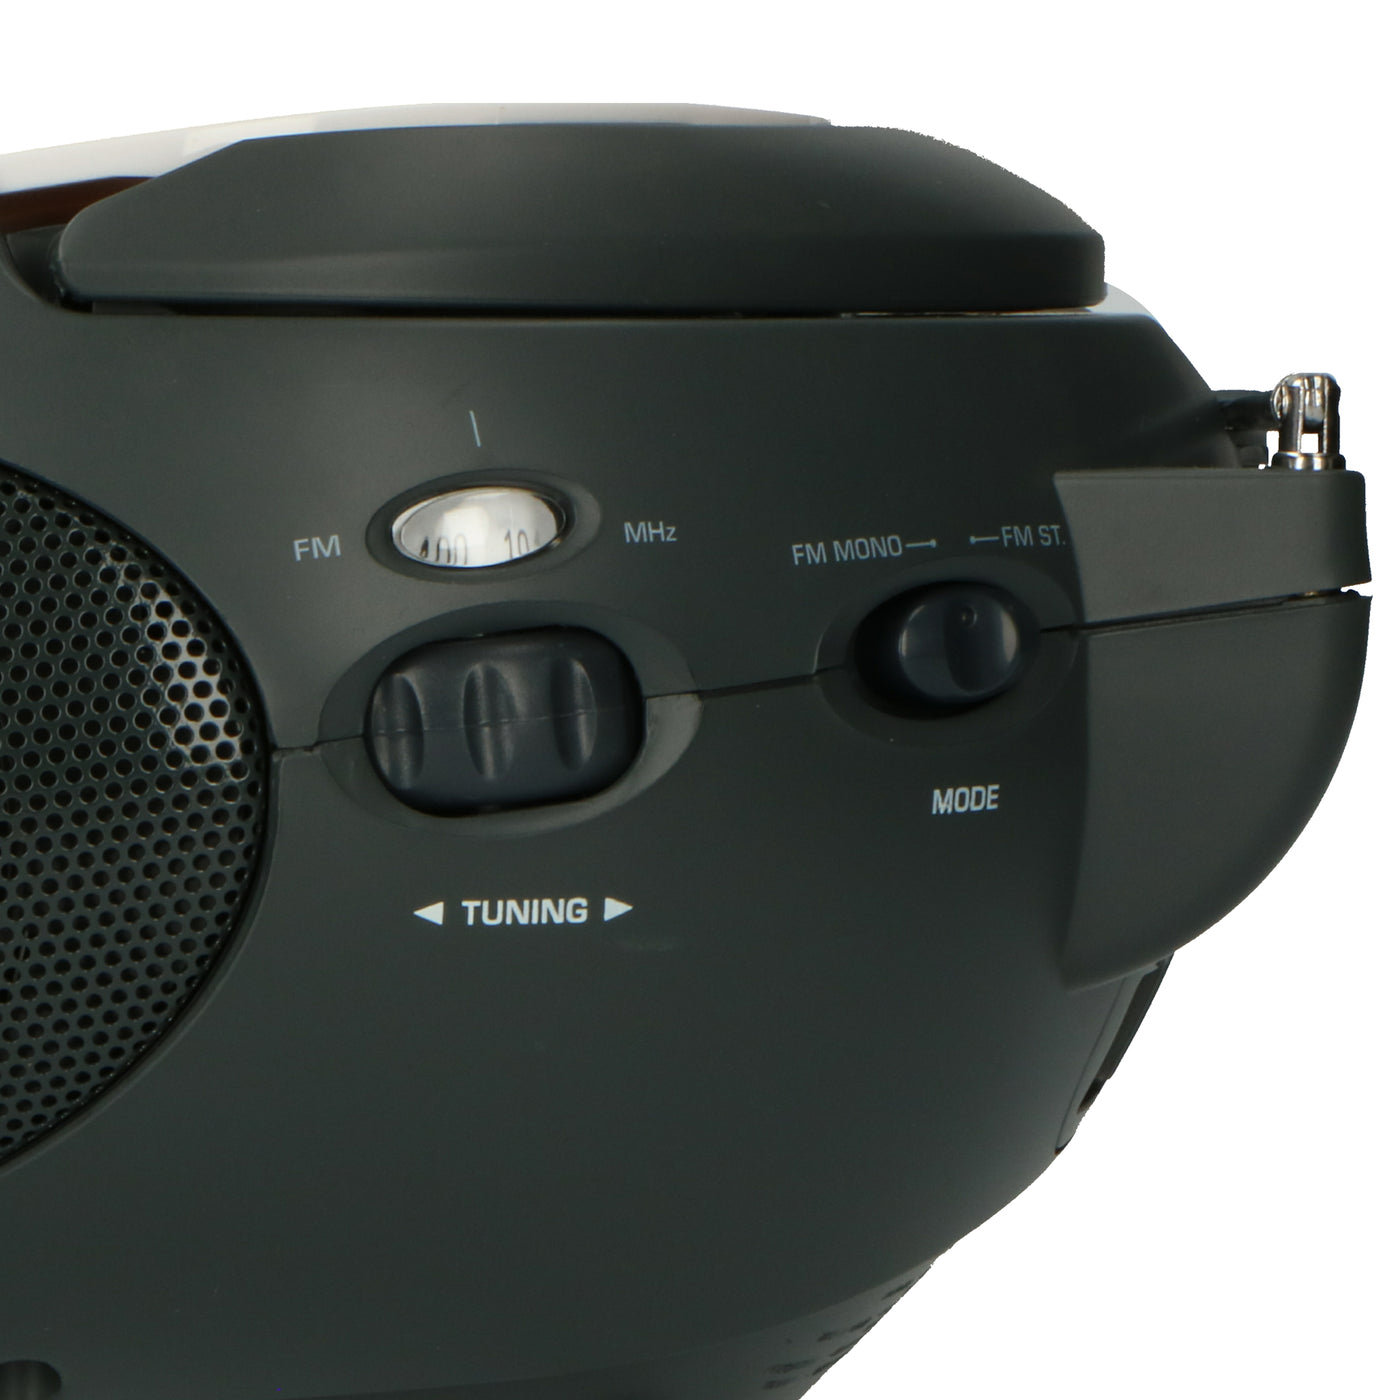 LENCO SCD-24 white - Draagbare stereo FM radio met CD-speler - Wit